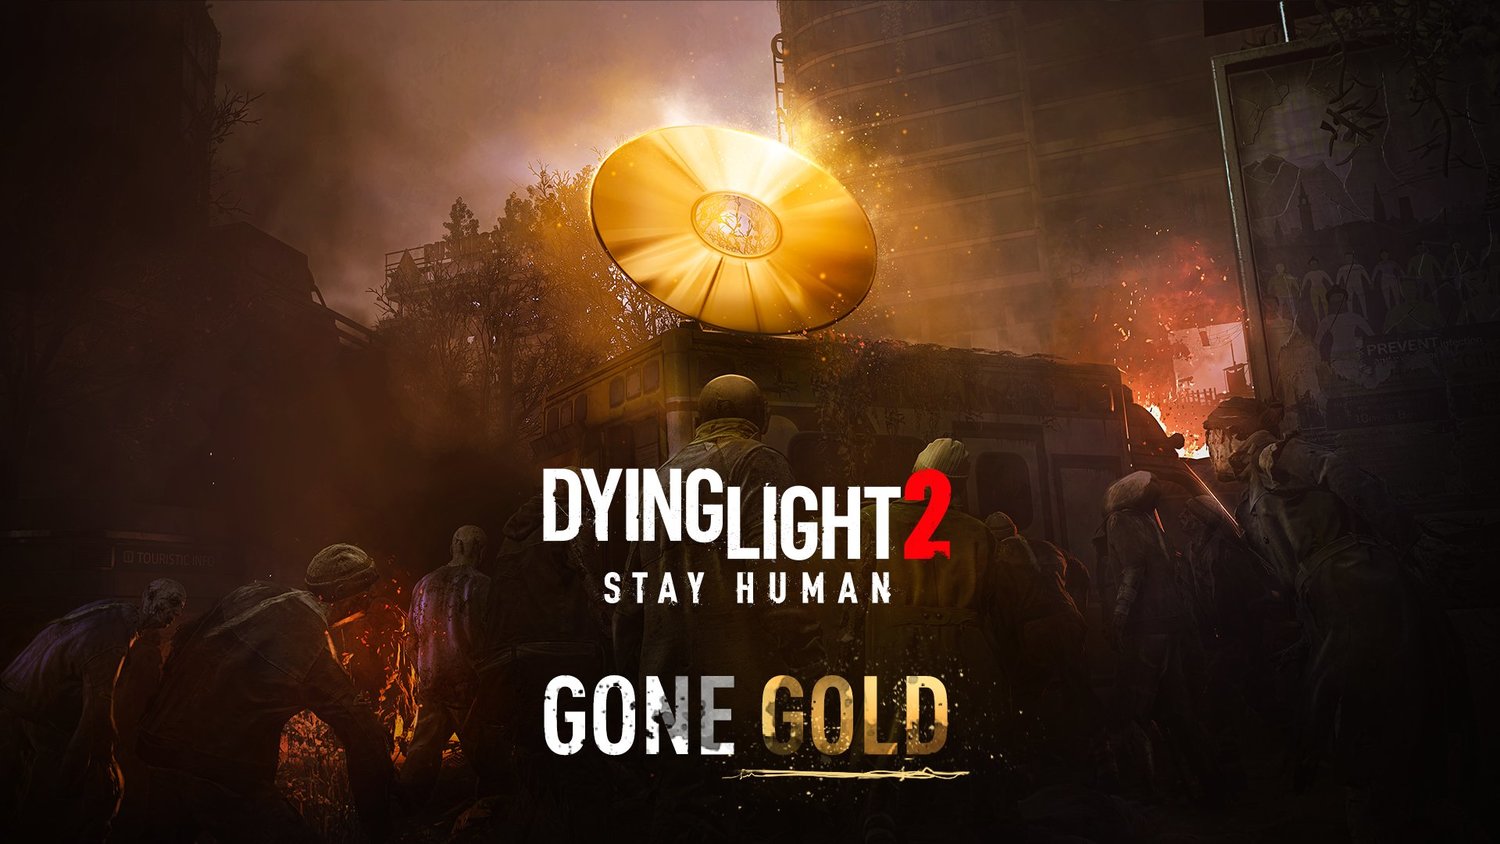 《垂死之光2 堅守人性》於去年12月初正式進廠壓片，遊戲預計2022年2月4日上市。   圖：翻攝自Dying Lgiht twitter